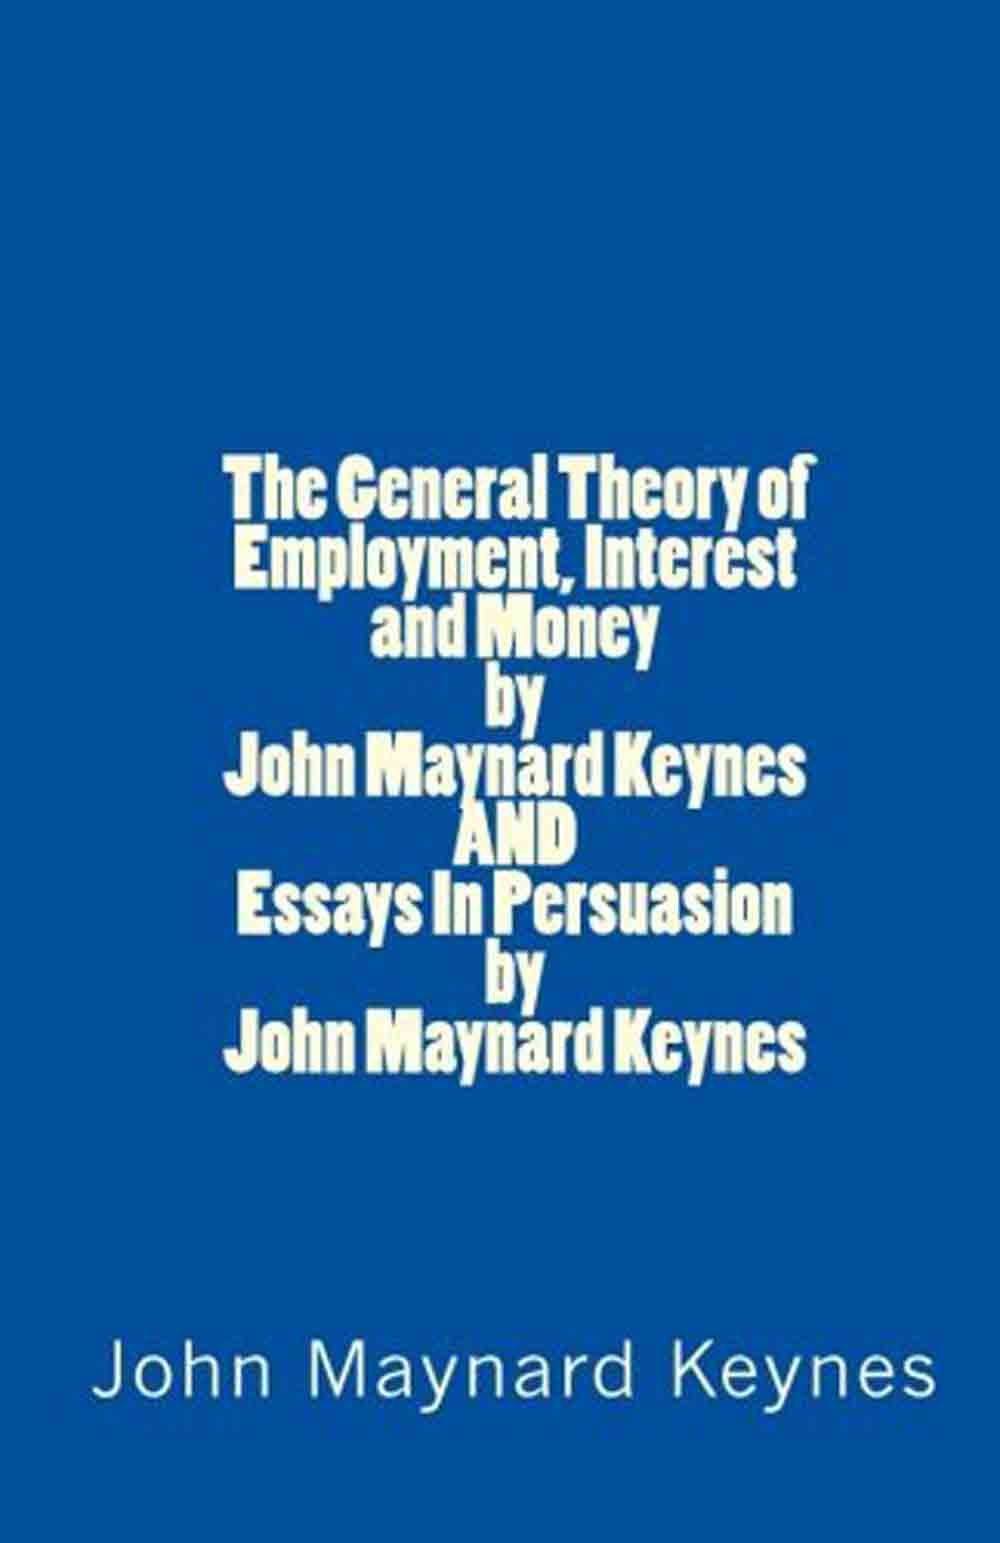 The Currency of Politics: Eine politische Theorie des Geldes von Aristoteles bis Keynes, Buchvorstellung und Gespräch mit dem Autor Stefan Eich und Imme Scholz